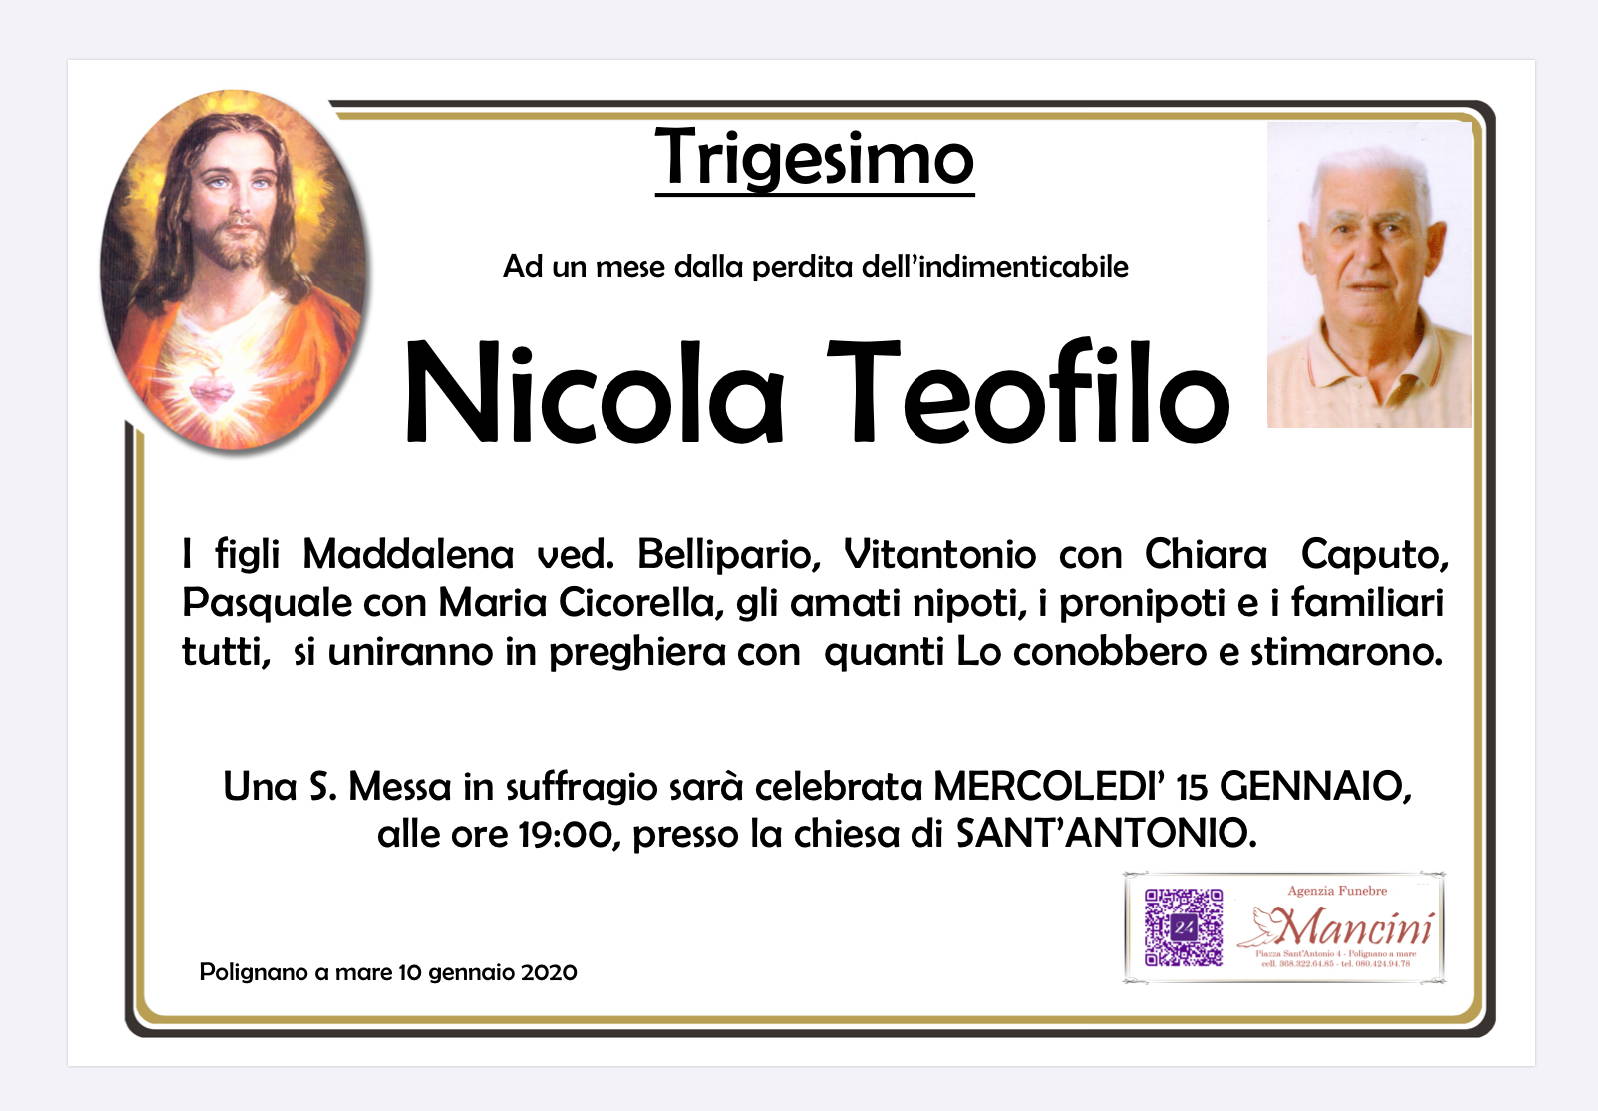 Nicola Teofilo